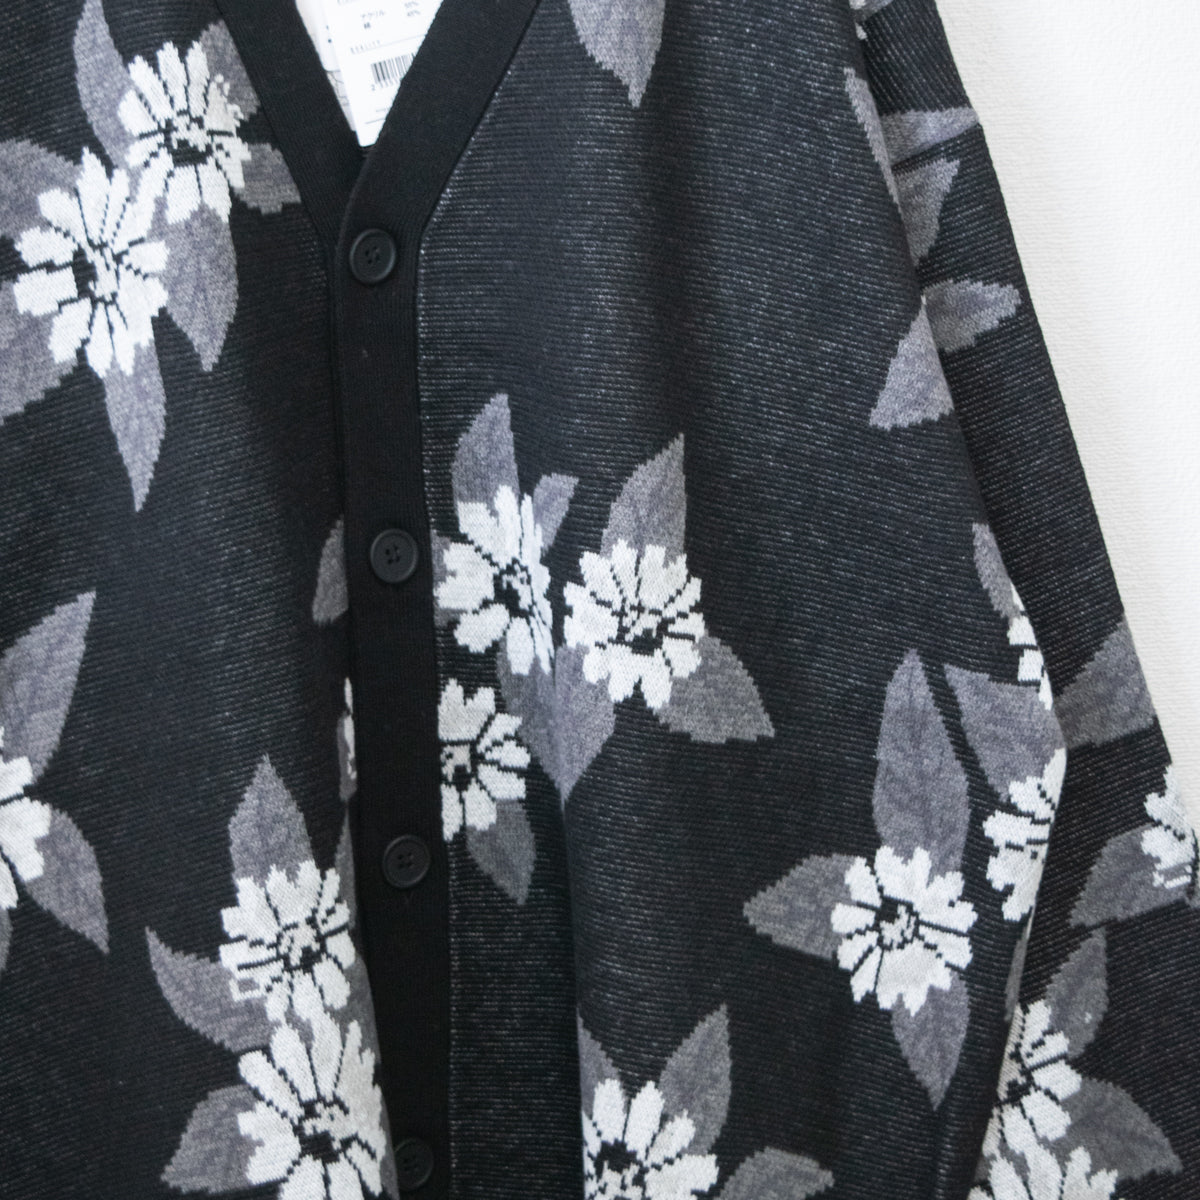 Timely Warning Floral Jacquard V-neck Cardigan BLACK